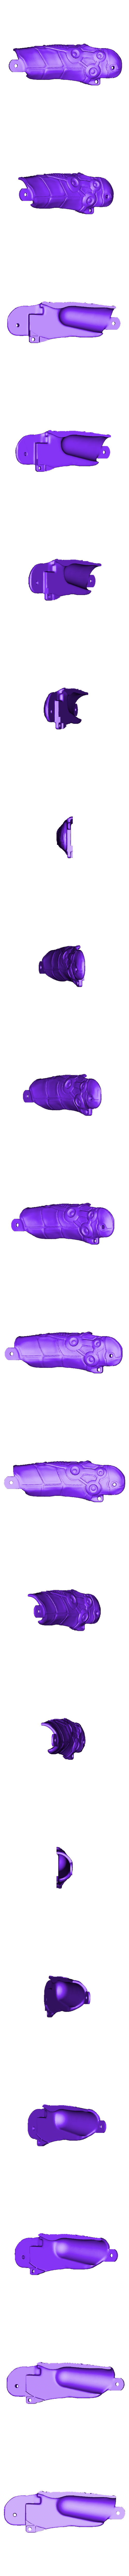 split BLADE  FINGER bot mid L.stl Download STL file Robo Blades Fingers • 3D printer model, LittleTup